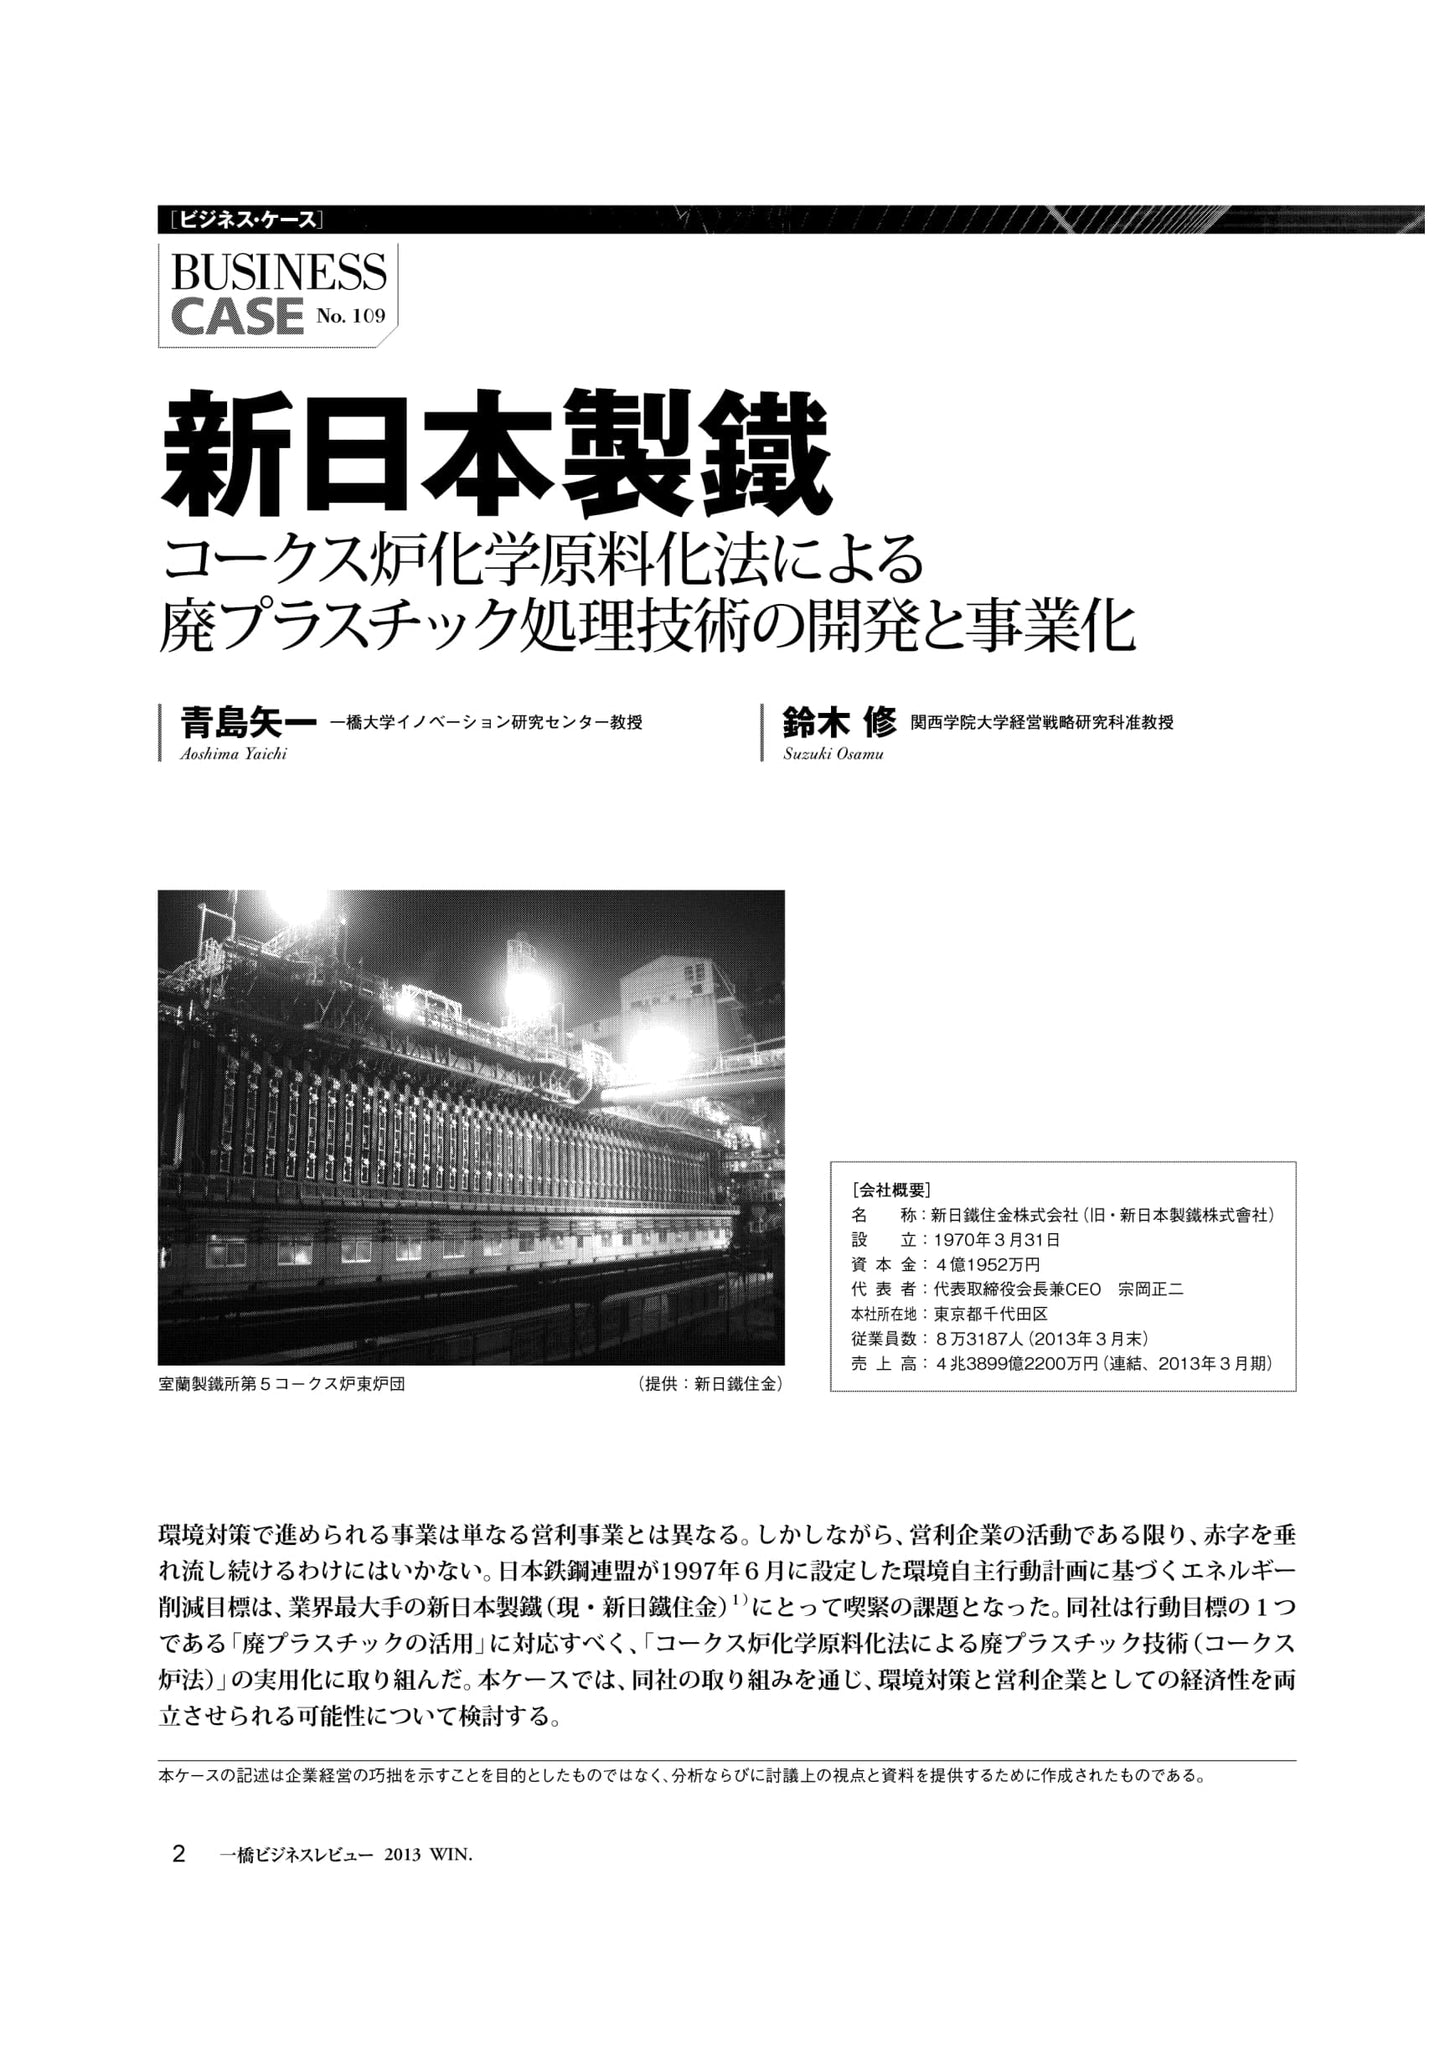 新日本製鐵 : コークス炉化学原料化法による廃プラスチック処理技術の開発と事業化